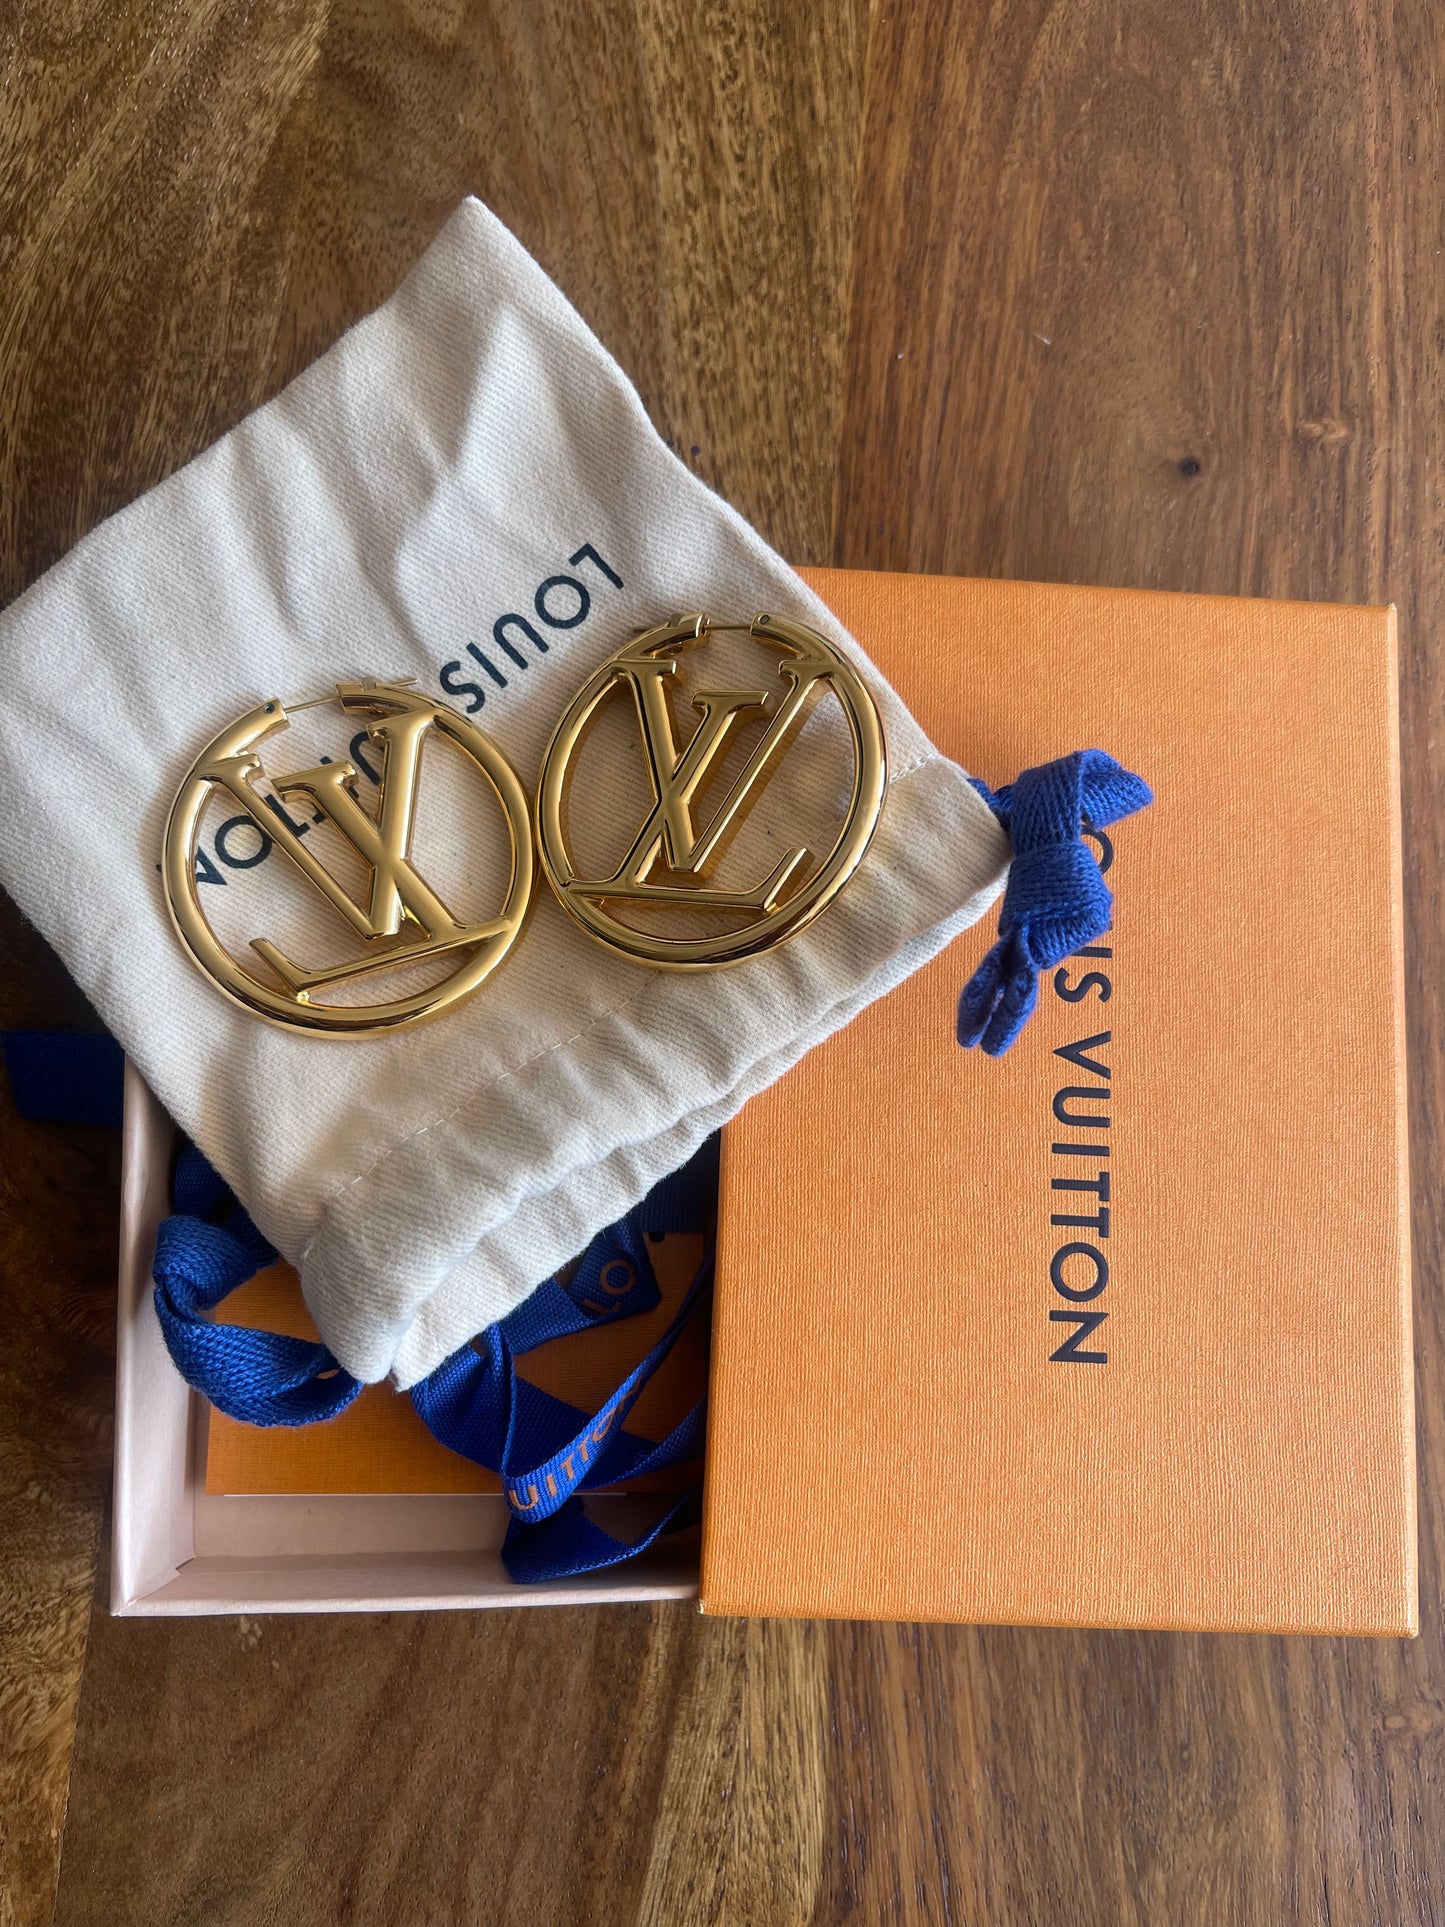 Louis Vuitton hoop earrings